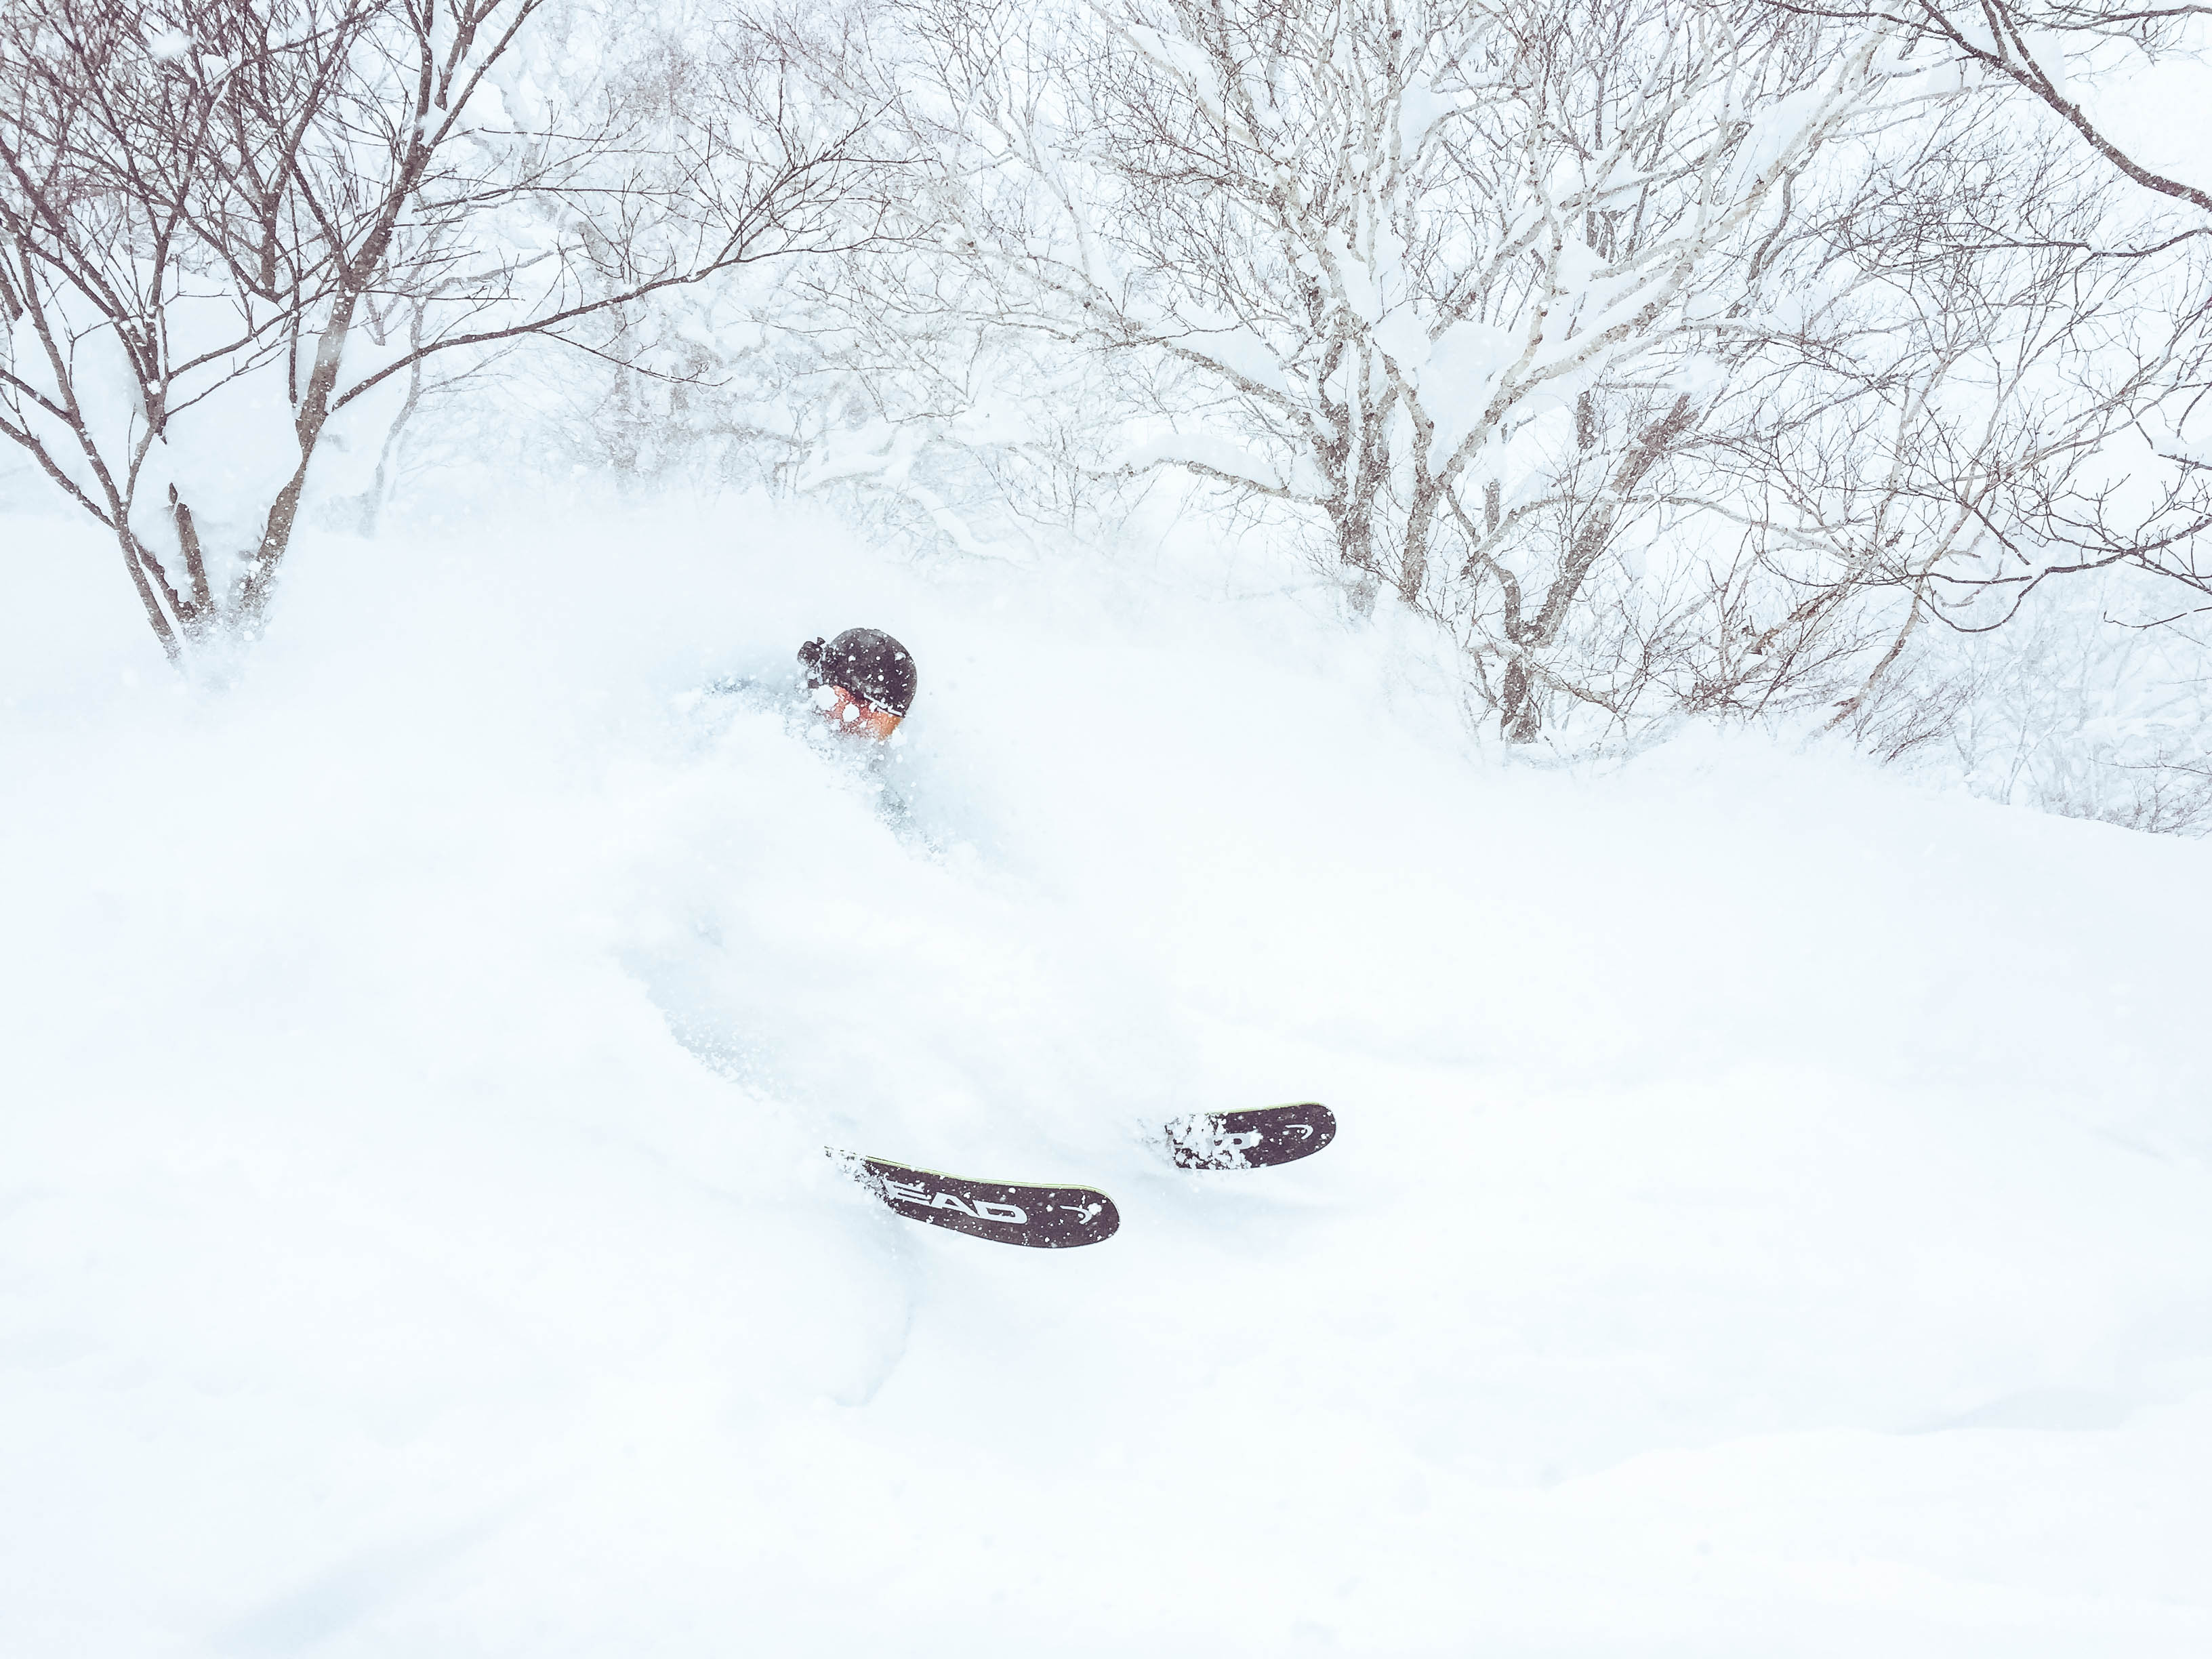 Niseko Japan - Powder Skiing